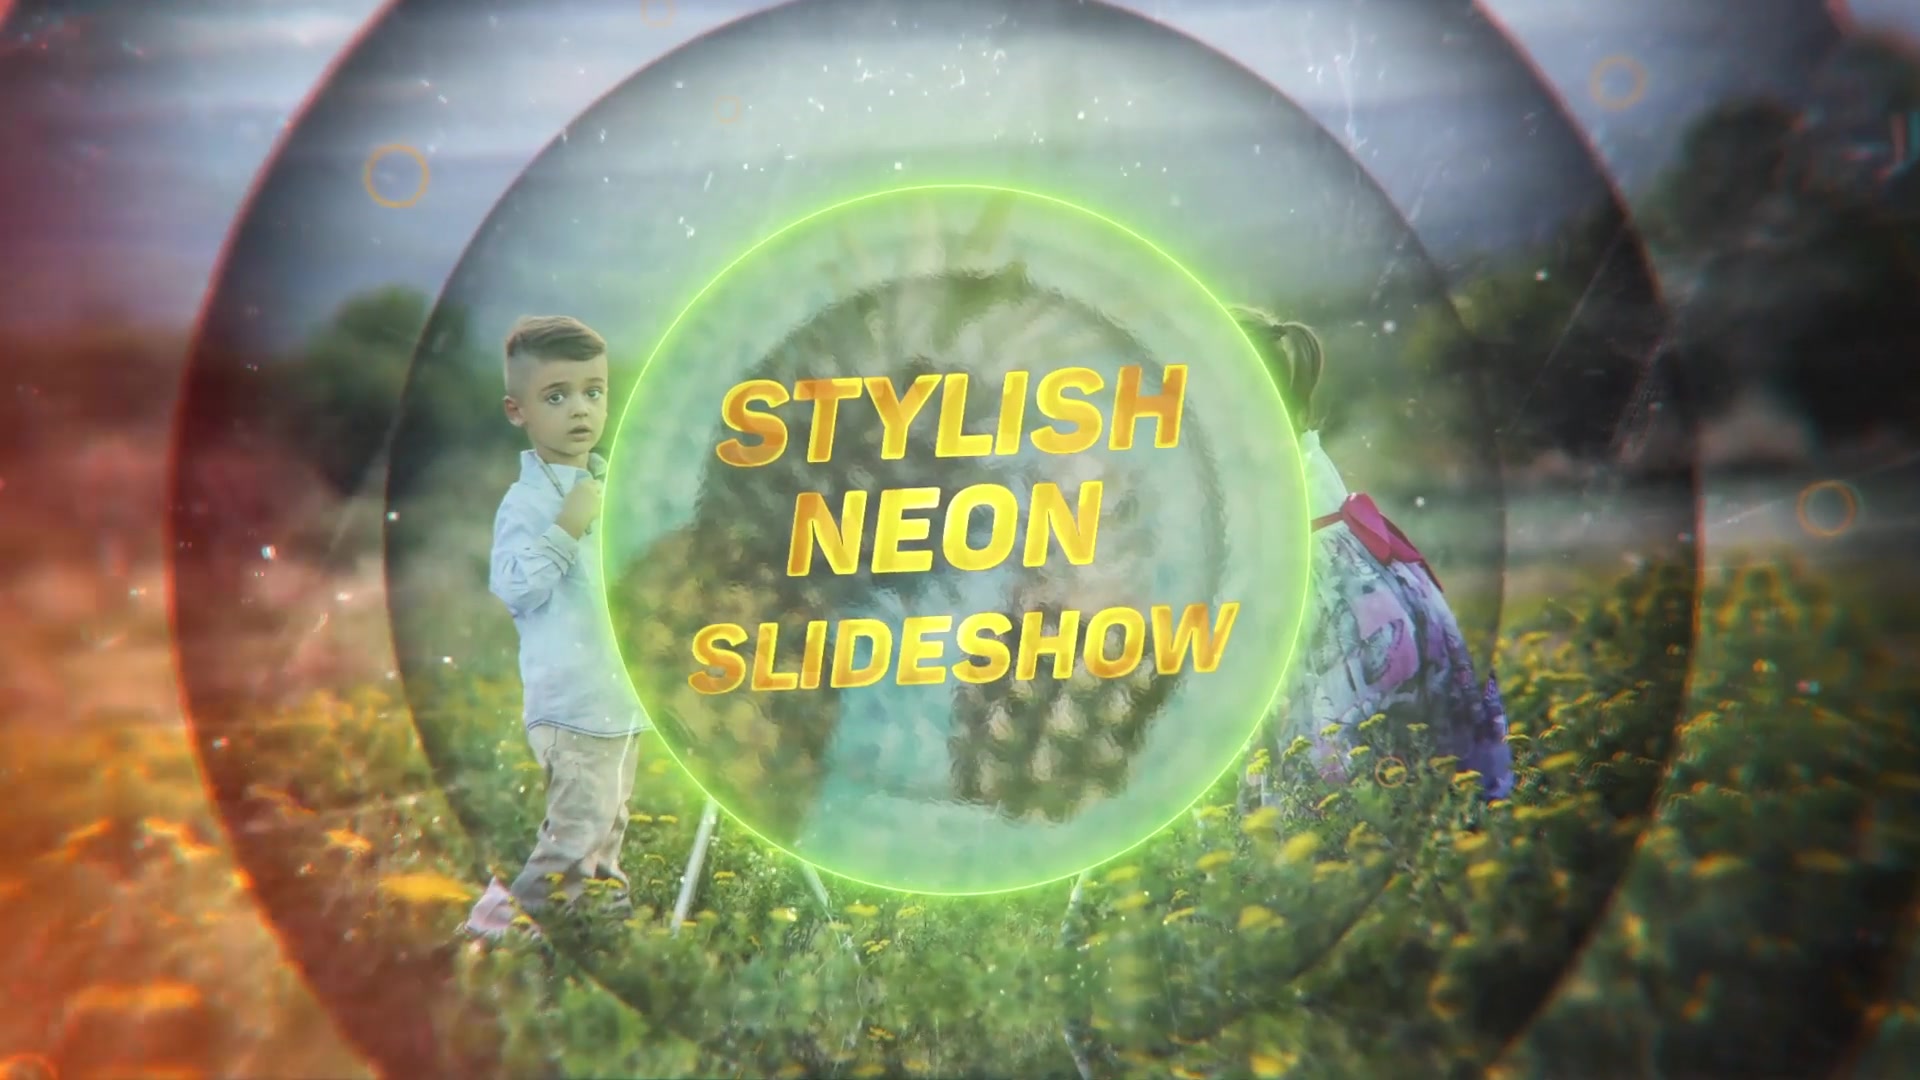 Stylish Neon Slideshow - Download Videohive 17494517